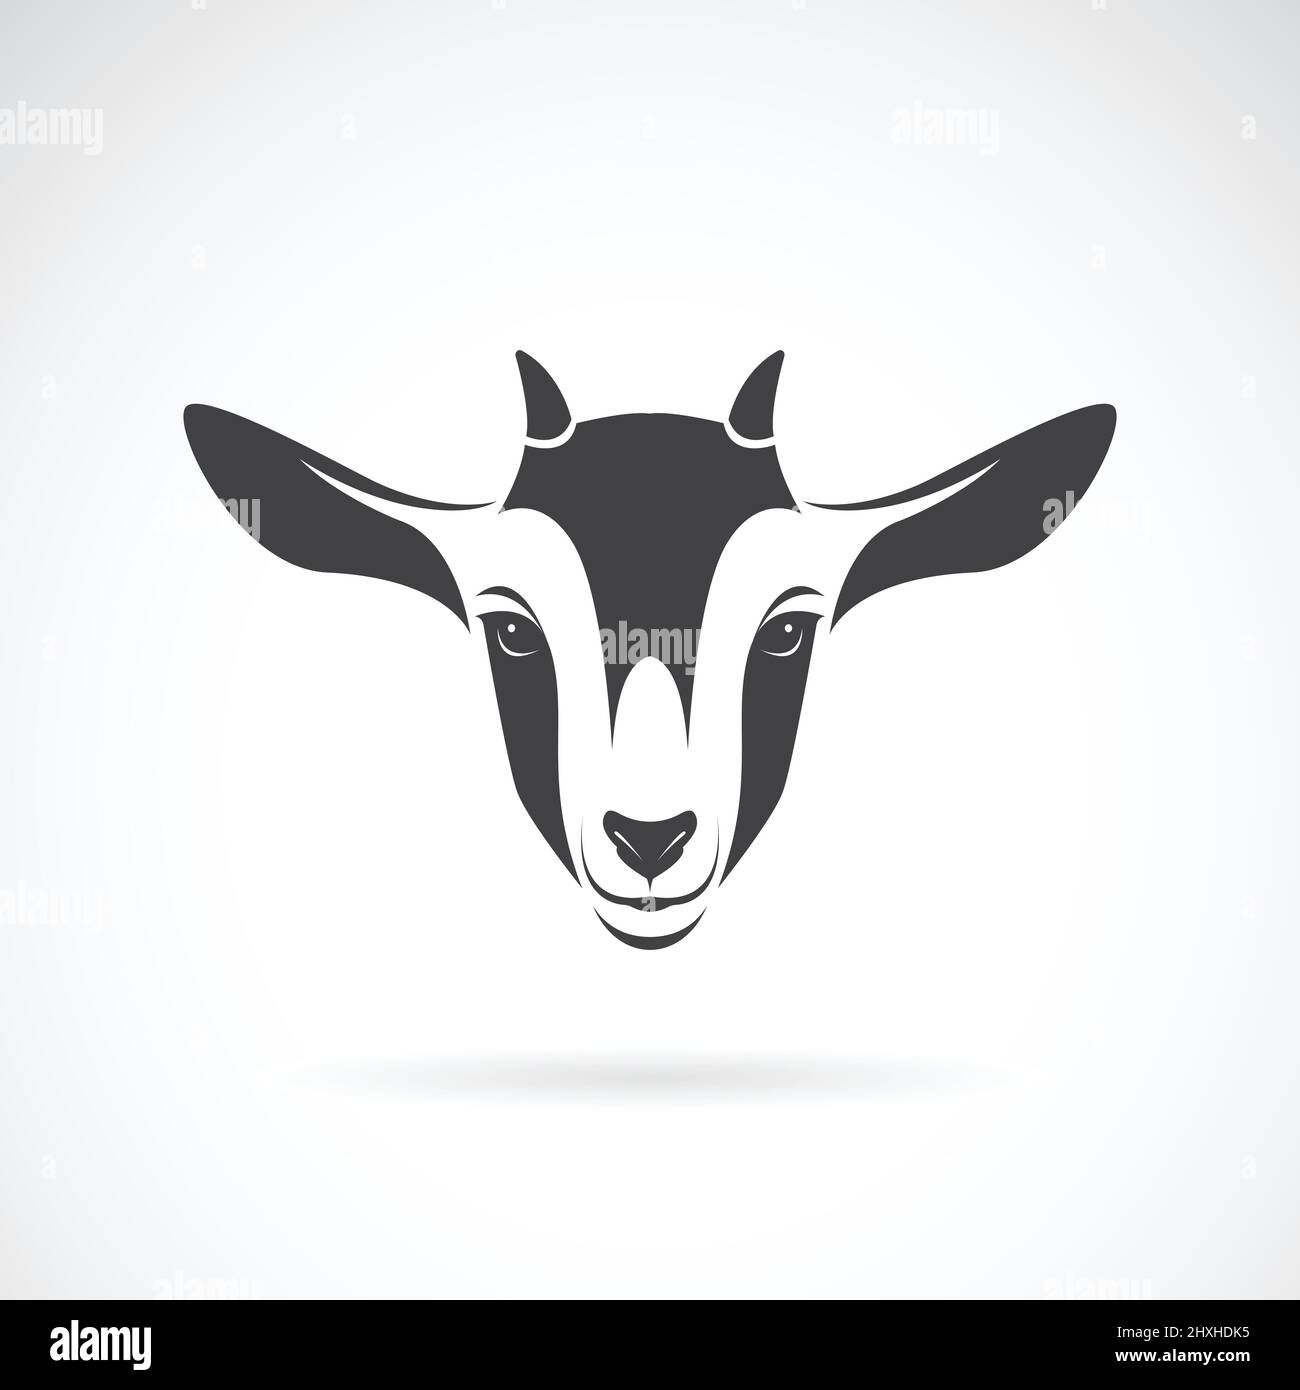 Vektor von Ziegenkopf-Design auf weißem Hintergrund, Animal Farm. Ziegenlogo oder -Symbol. Leicht editierbare Vektorgrafik mit Ebenen. Stock Vektor